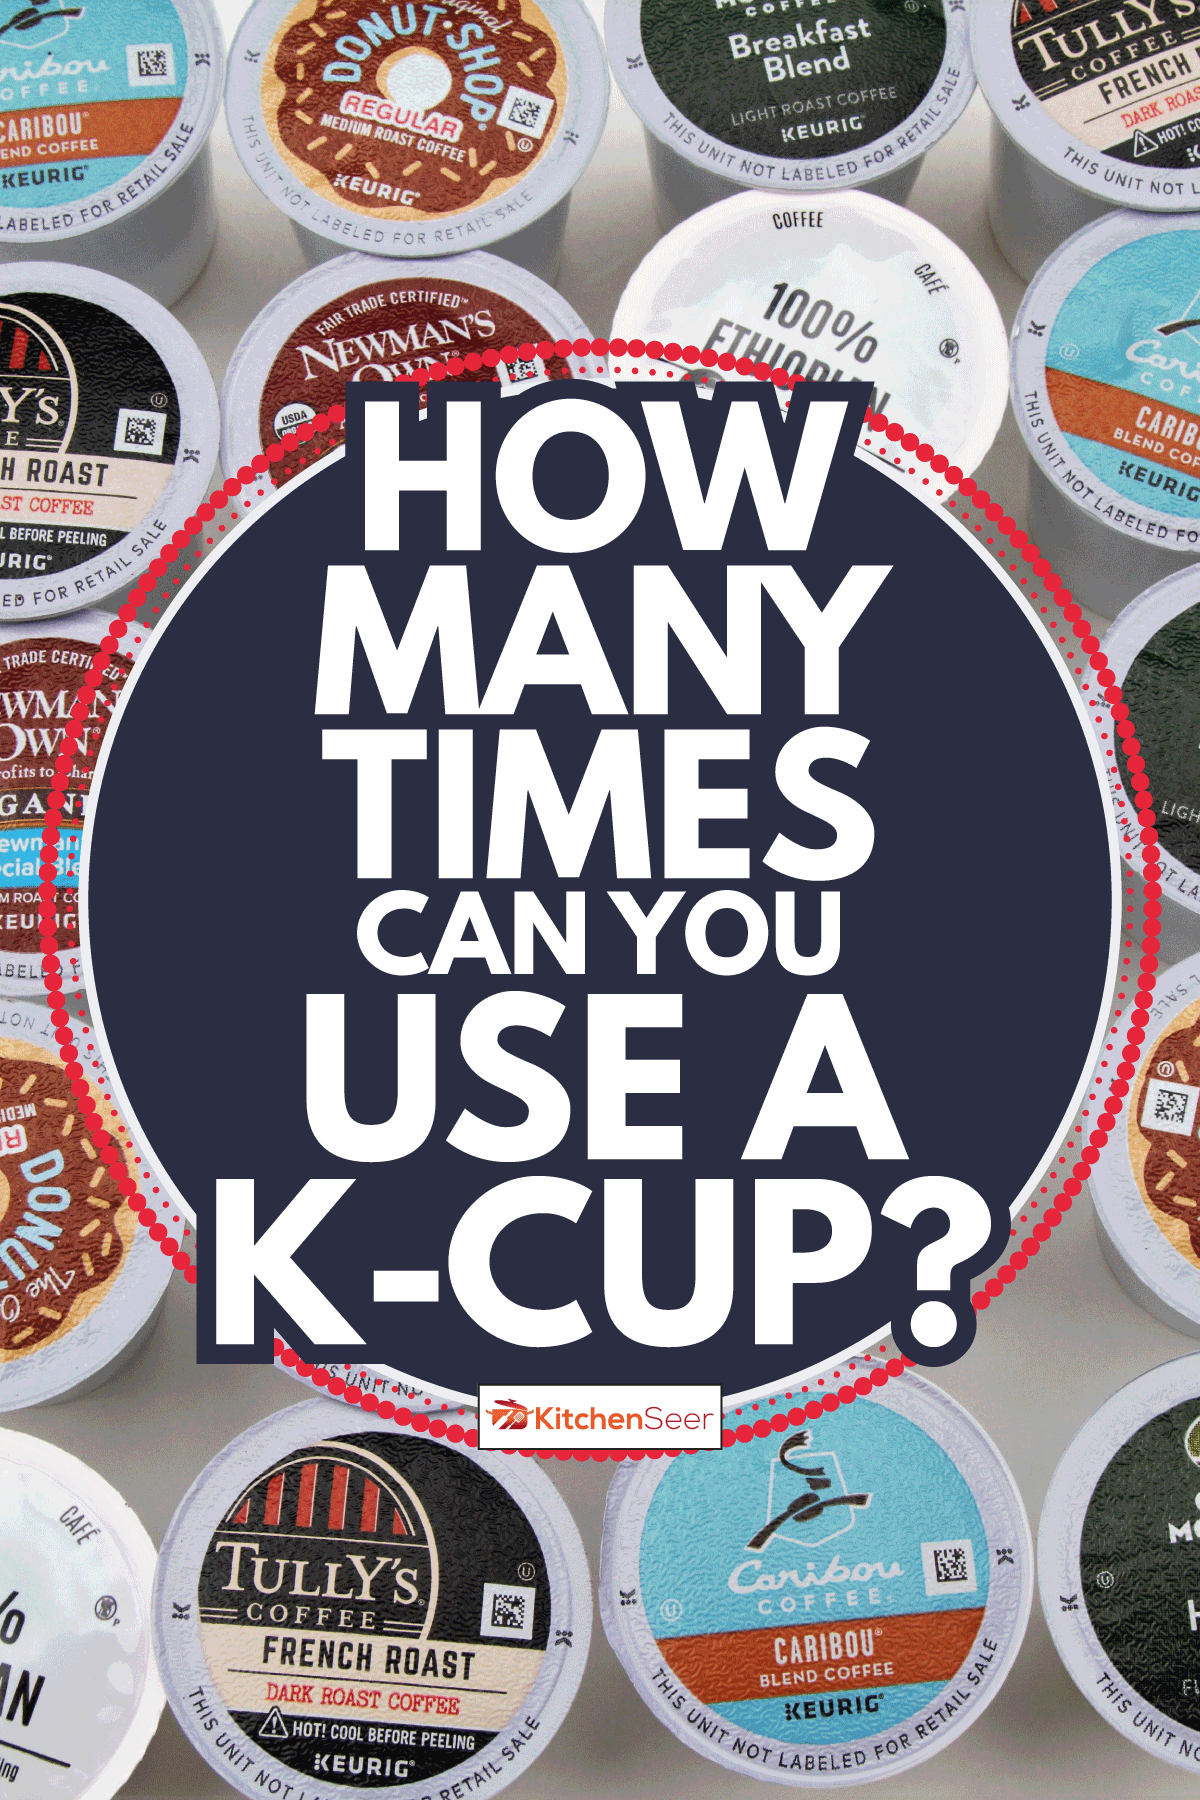 一大群各种品牌的咖啡豆荚Keurig单杯咖啡机。有多少次你能使用k